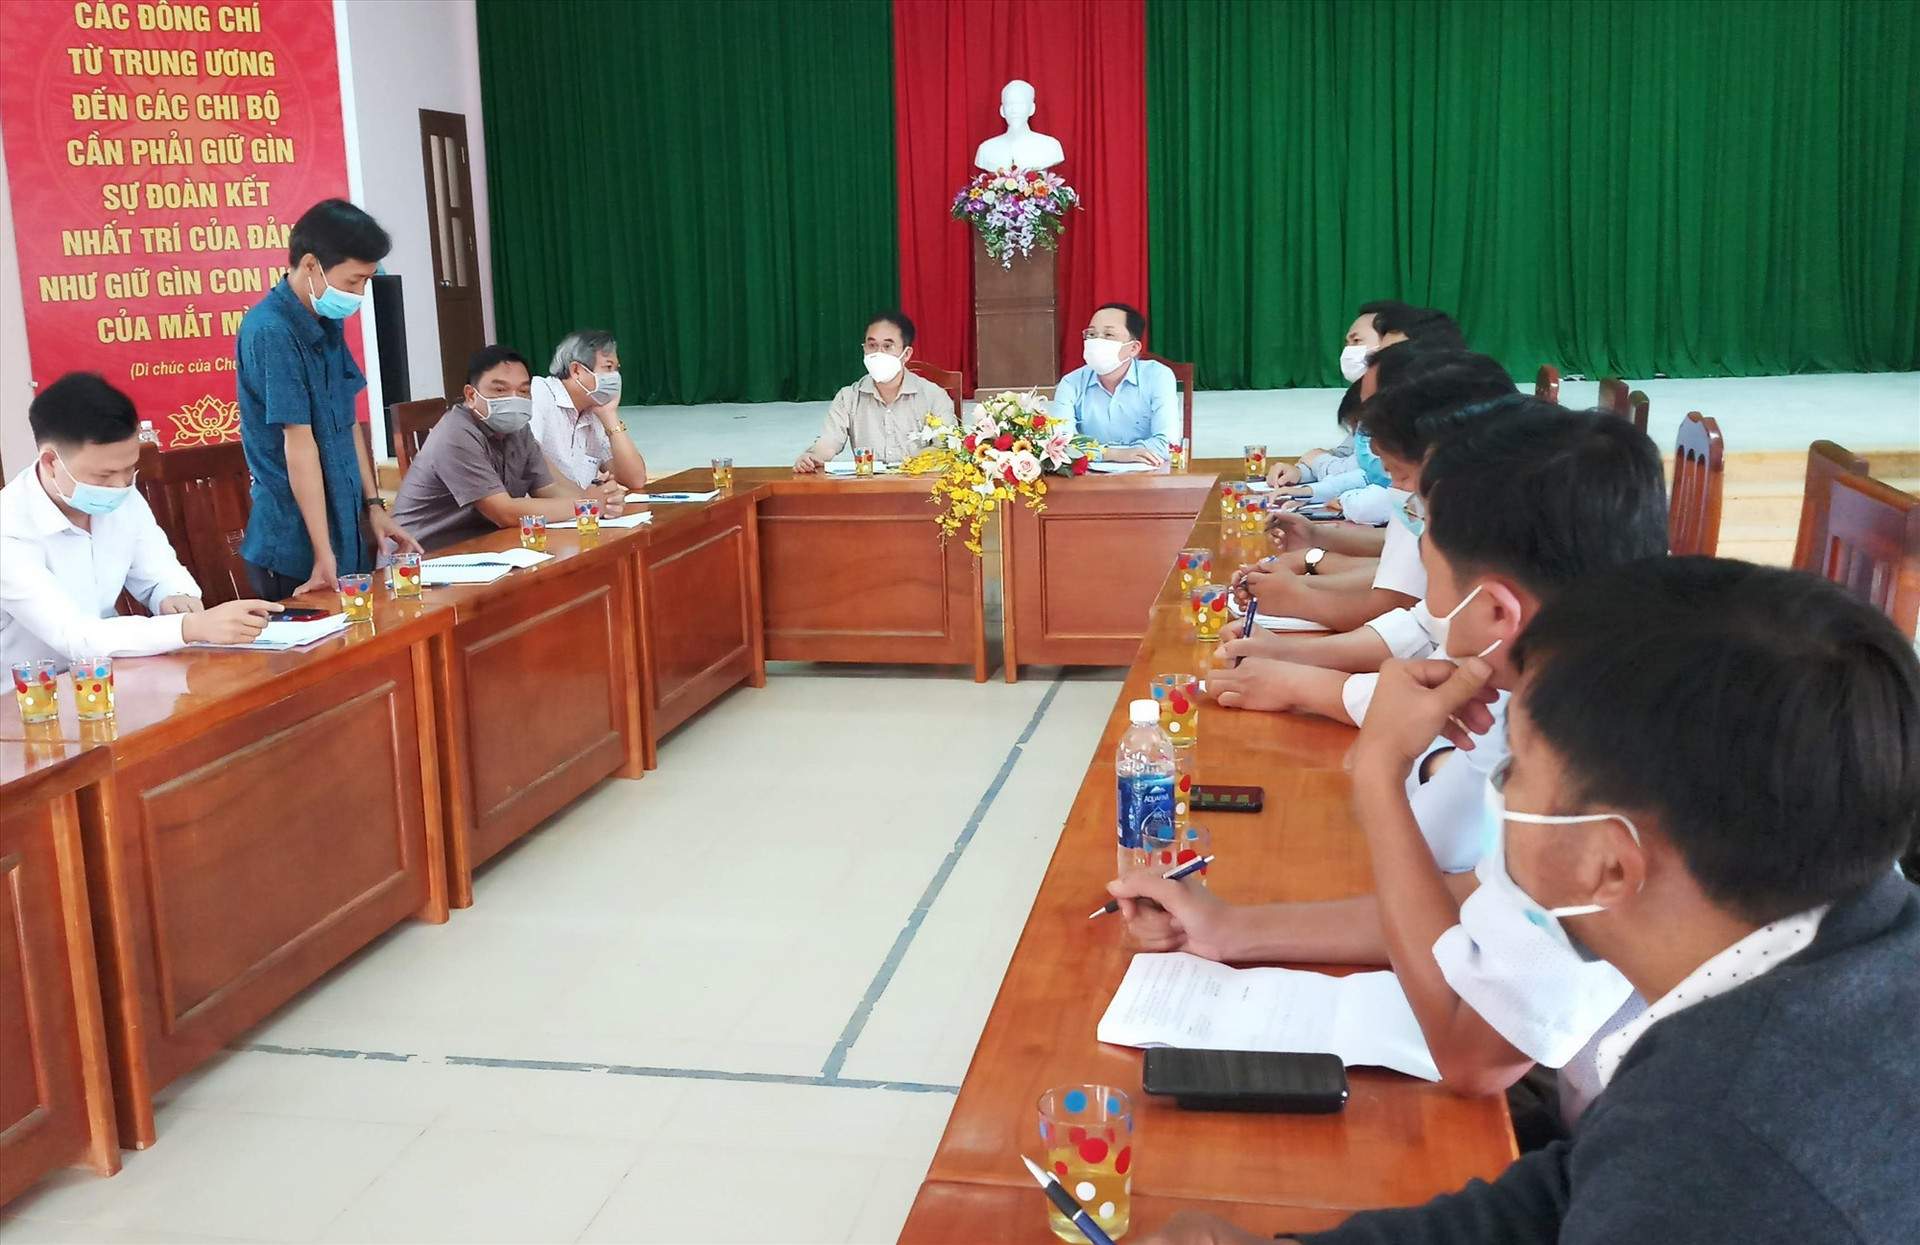 Sau buổi khảo sát thực tế, Phó Chủ tịch UBND tỉnh Trần Anh Tuấn đã có buổi làm việc với huyện Tây Giang, thống nhatá các phương án khắc phục thiên tai sắp tới. Ảnh: A.N